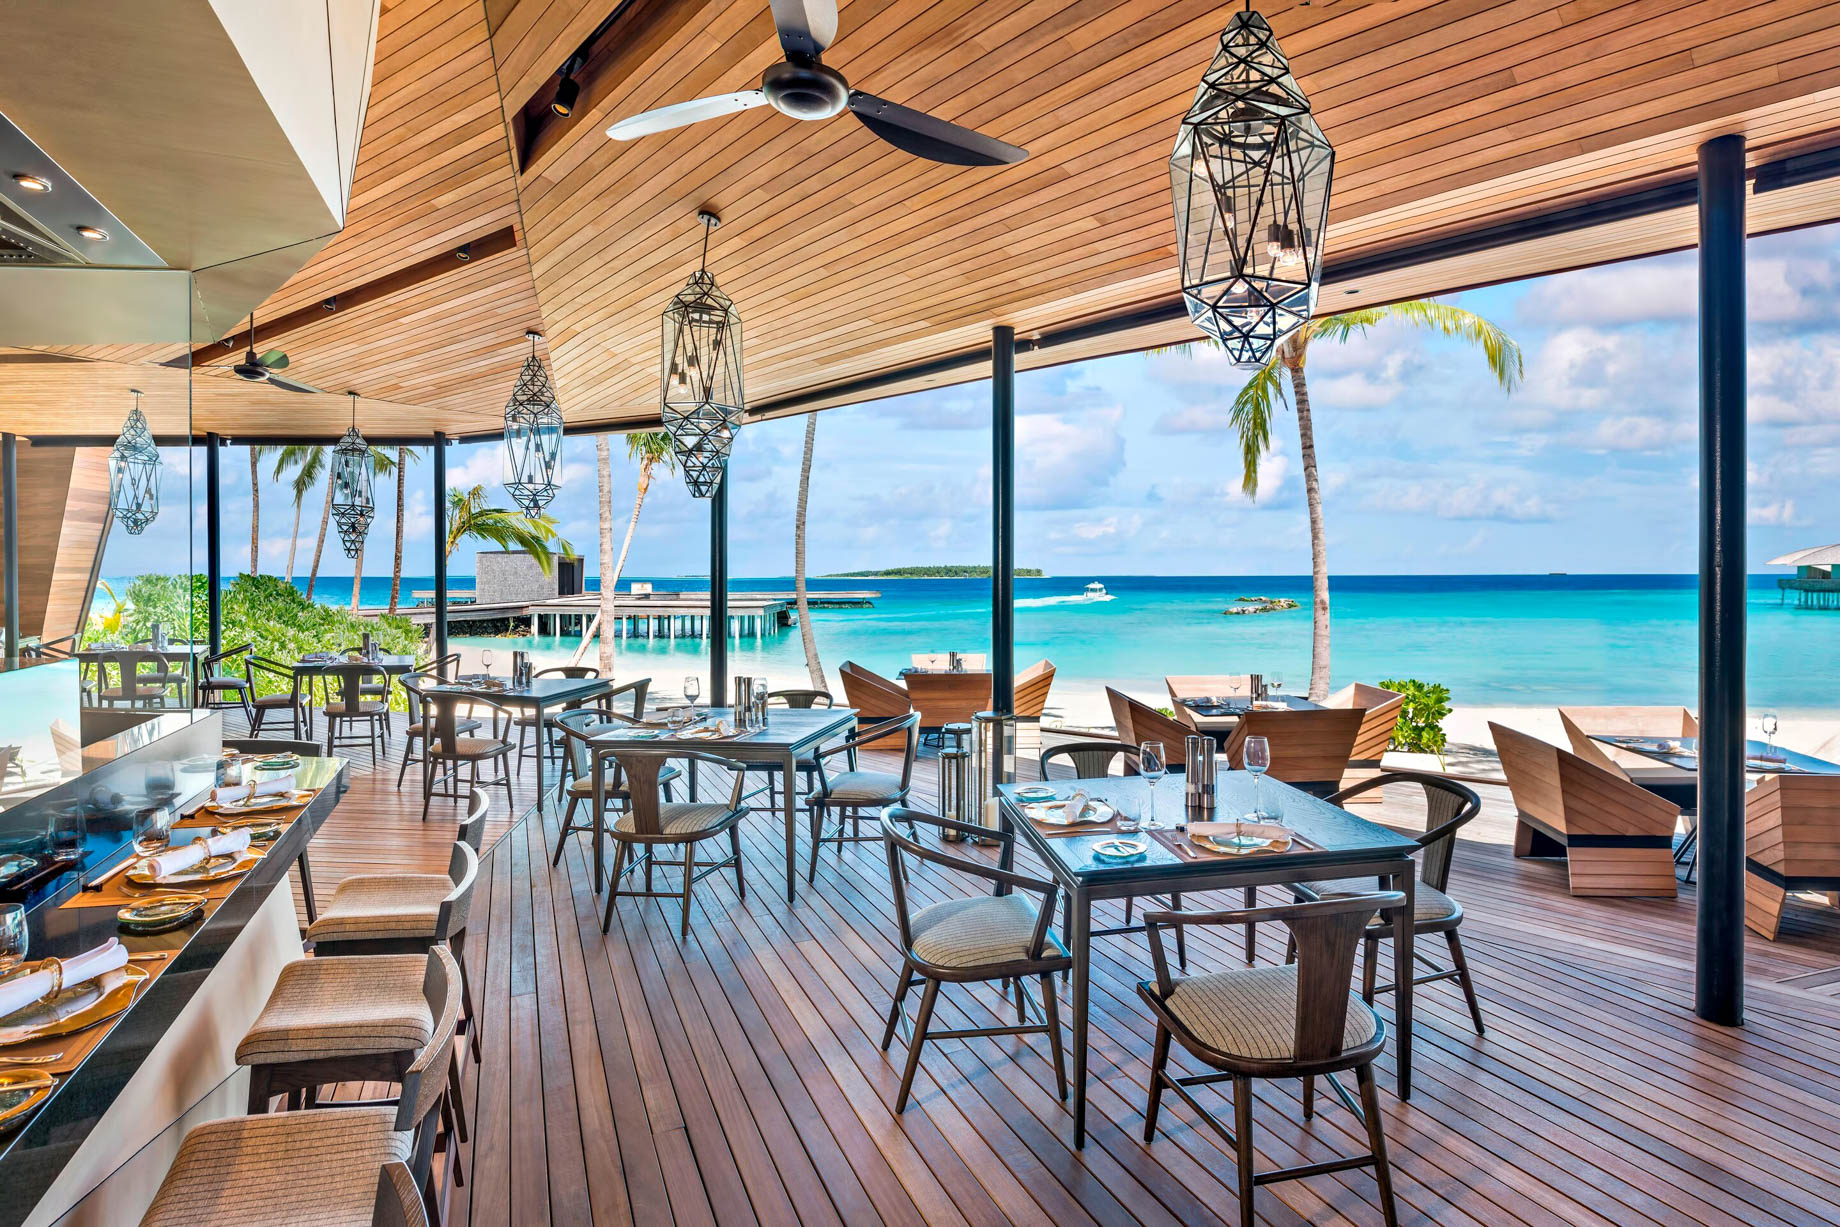 The St. Regis Maldives Vommuli Resort – Dhaalu Atoll, Maldives – Orientale Restaurant Interior